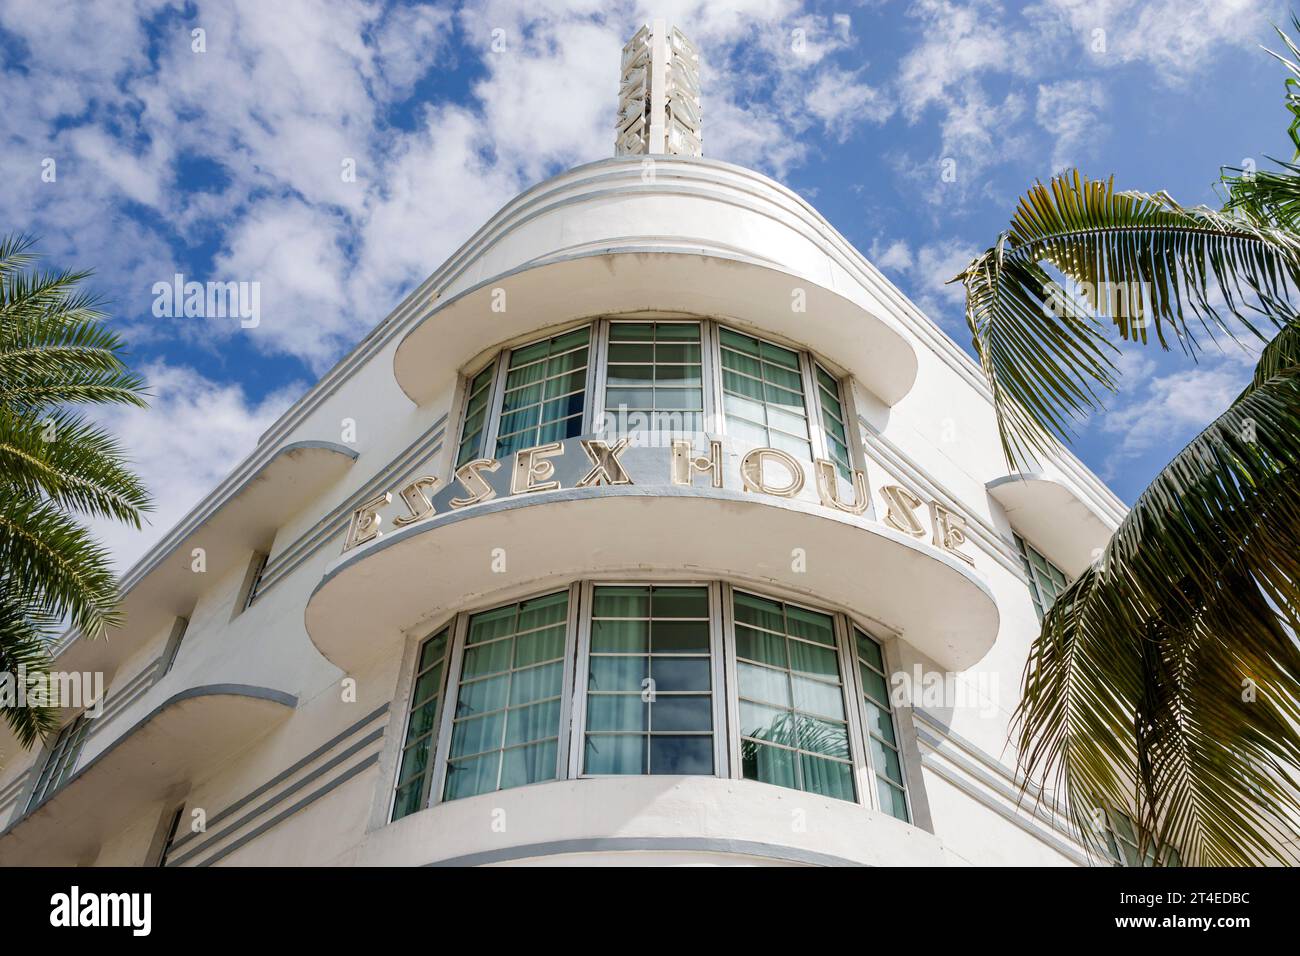 Miami Beach Floride, extérieur, entrée principale de l'hôtel, Collins Avenue, Essex House by Clevelander signe, architecture de style Art déco, hôtels m Banque D'Images